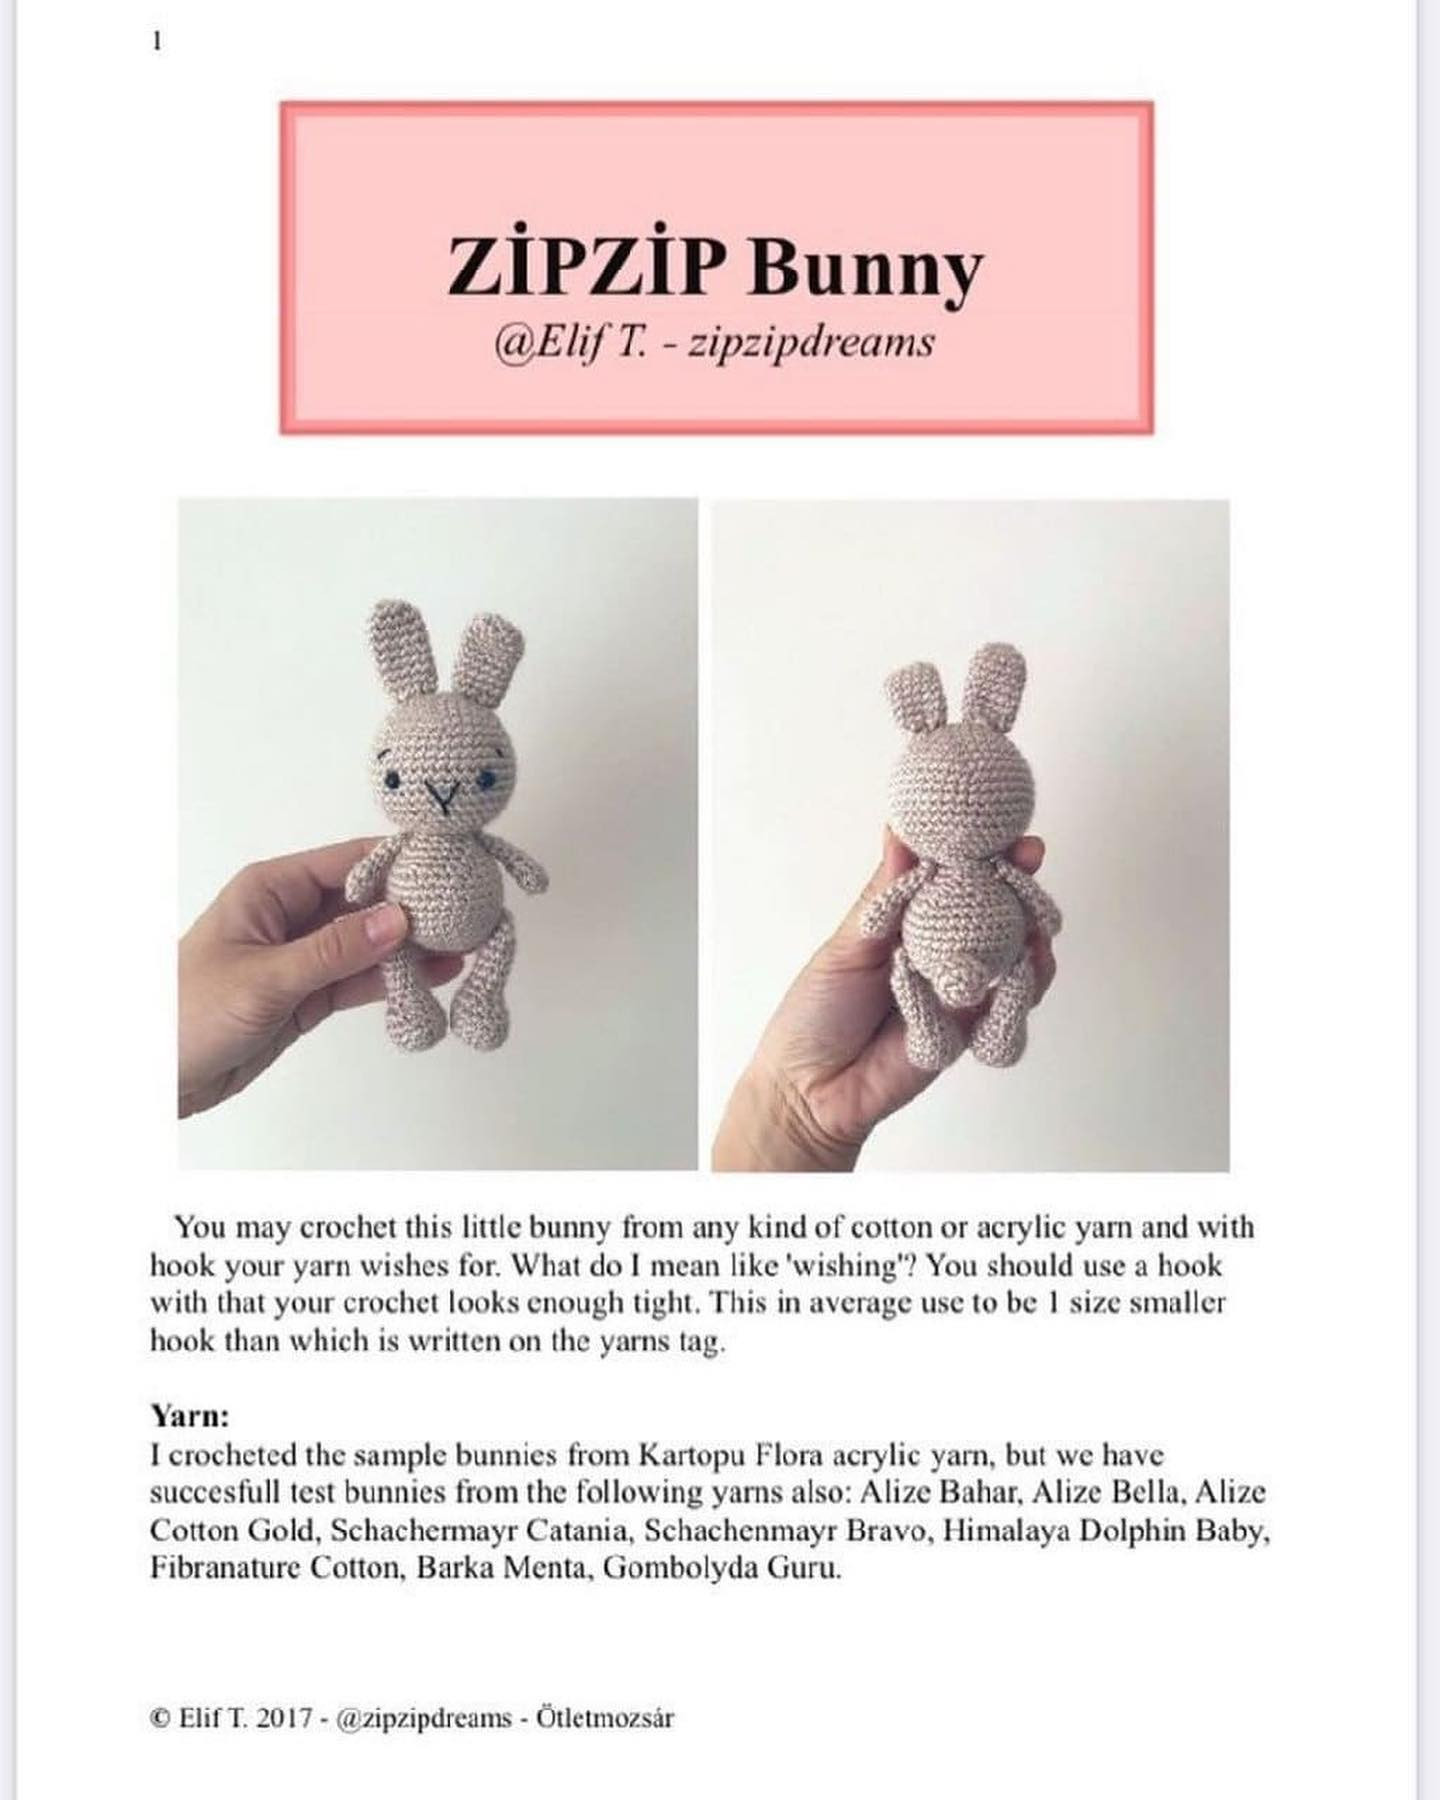 zip zip bunny crochet patern